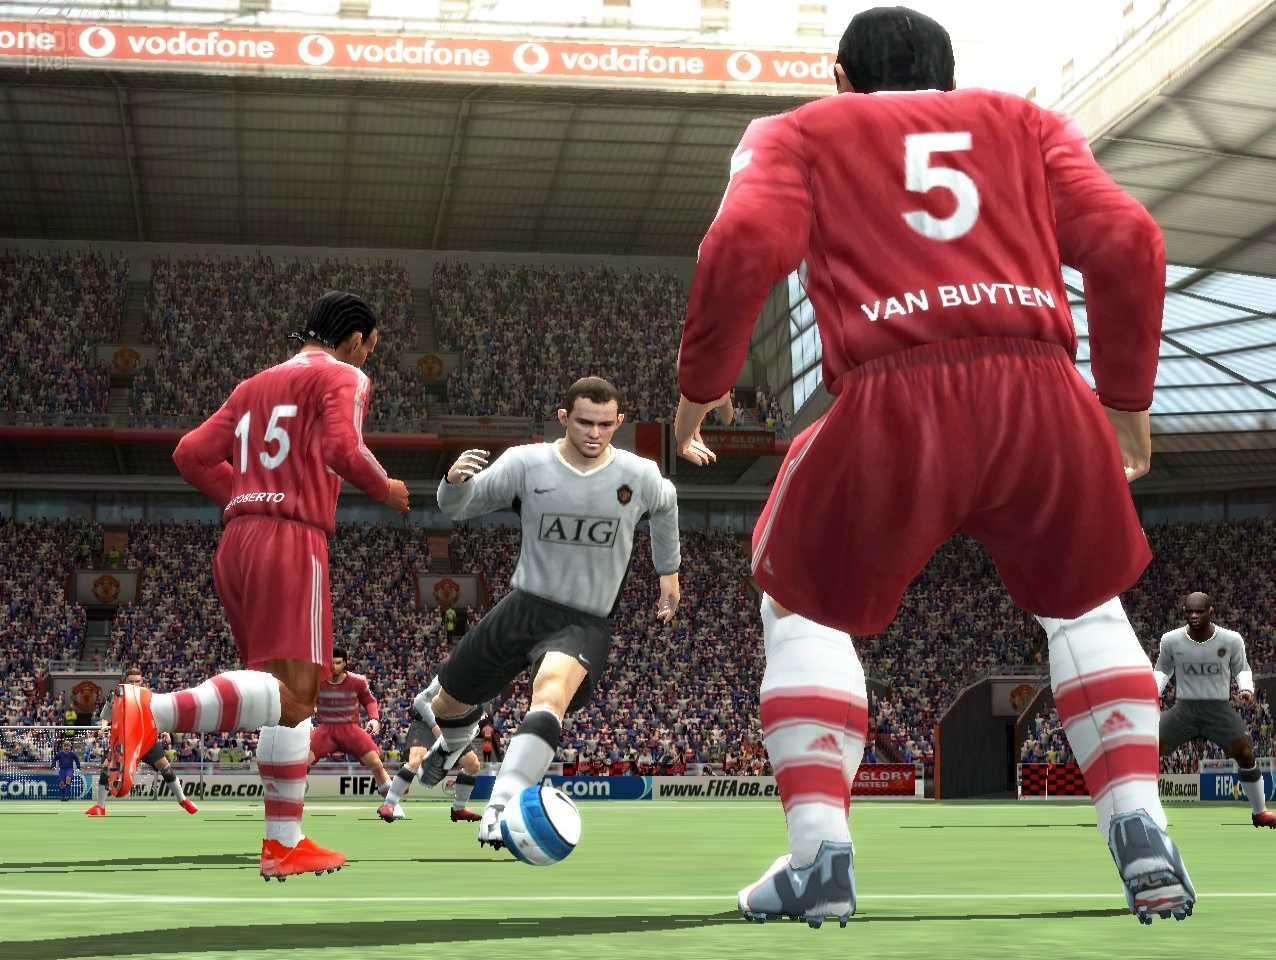 Гонка вооружений между сверхсимуляторами FIFA и Pro Evolution Soccer, похоже, достигает своего пика В прошлом году PES порадовал нас хорошим геймплеем и кучей нововведений В году нынешнем настал черёд Electronic Arts – компания расщедрилась на обещания и